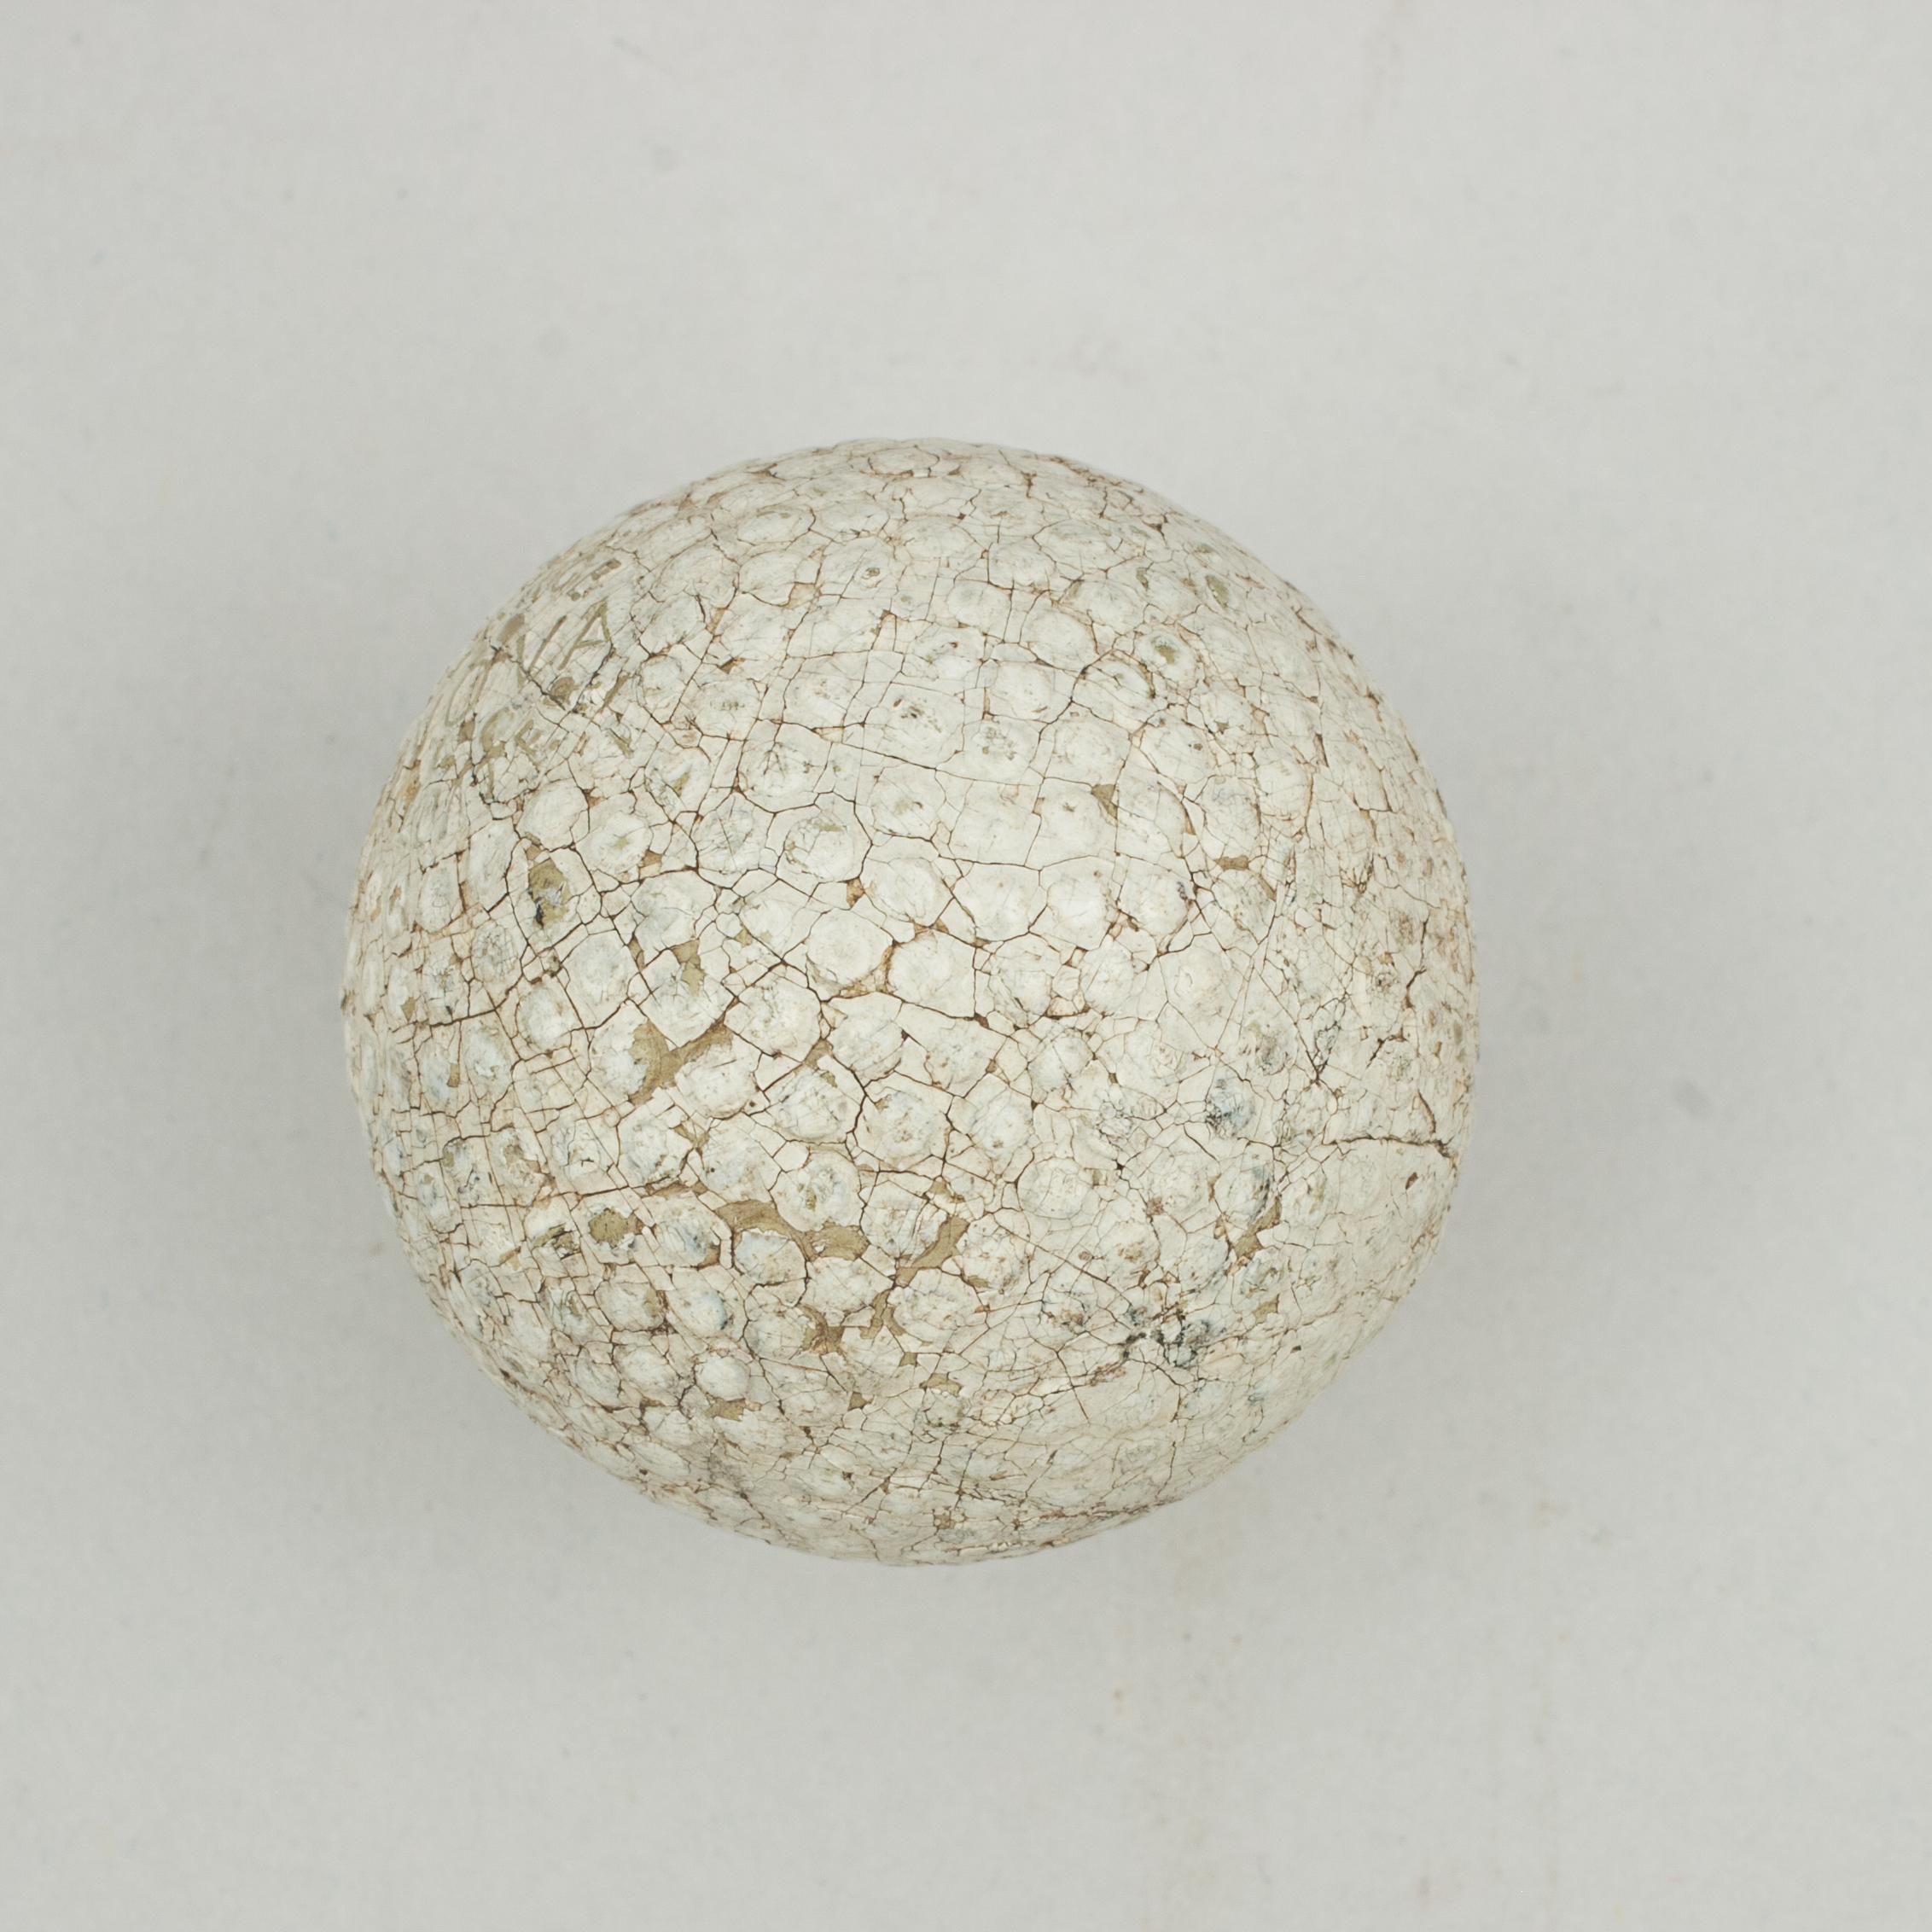 Bramble Golfball, Großer NOVA Floater.
Ein gutes Beispiel für einen 'Large NOVA Floater' Golfball mit Gummikern und Brombeermuster. Der Golfball ist in gutem Zustand und wird von Boyle's hergestellt. Der Ball ist auf beiden Stangen mit 'Large NOVA